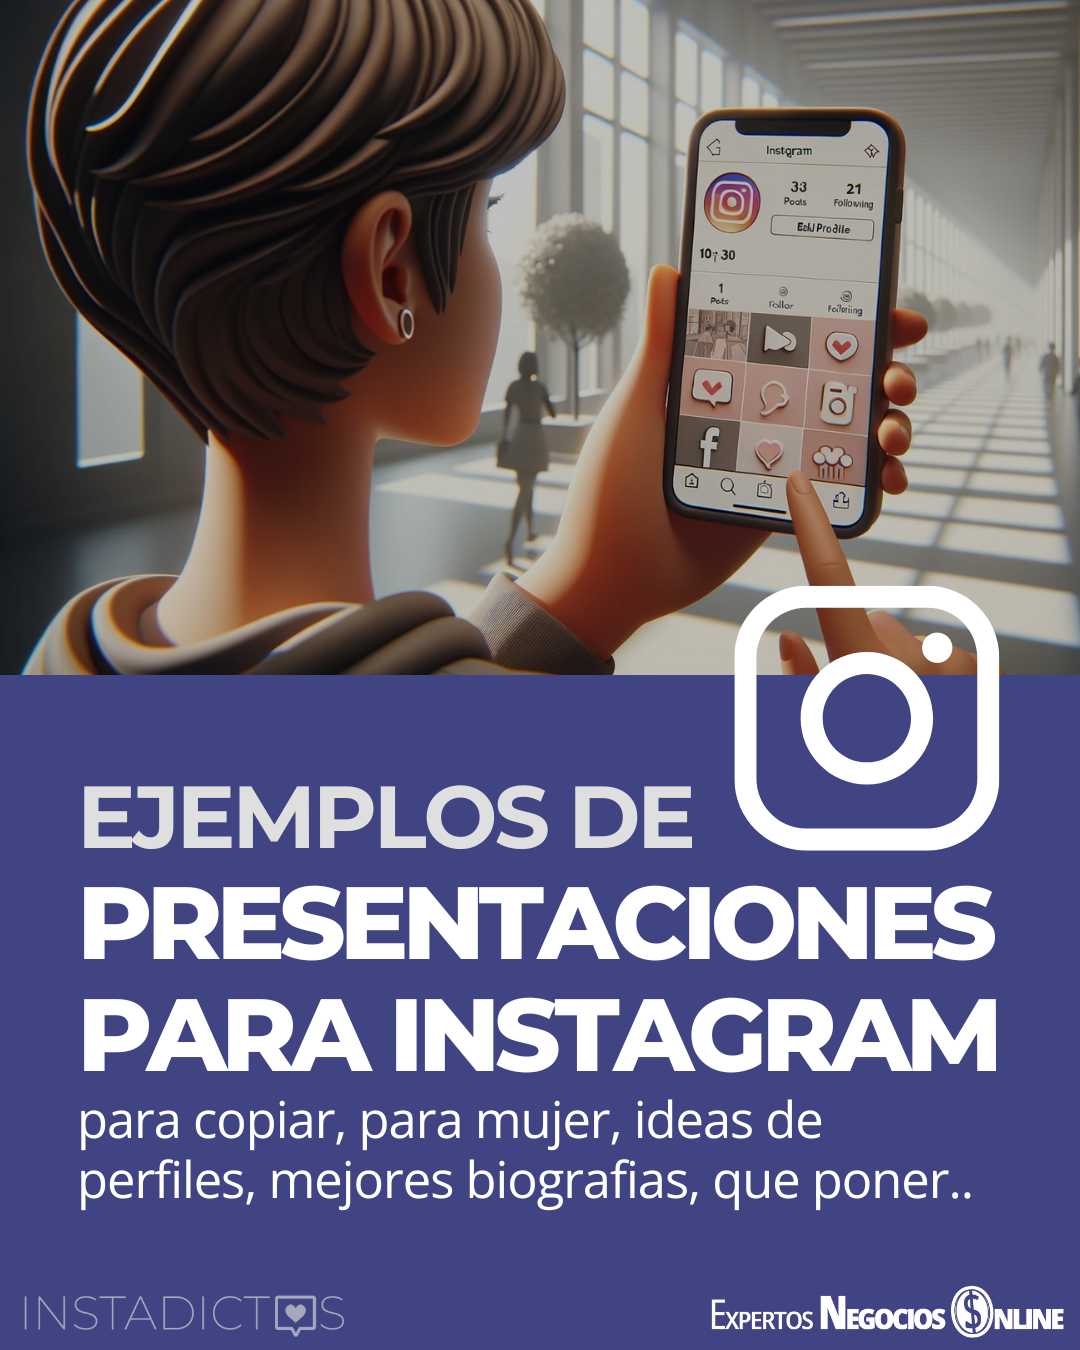 Biografía en Instagram | Ejemplos presentaciones perfil Instagram